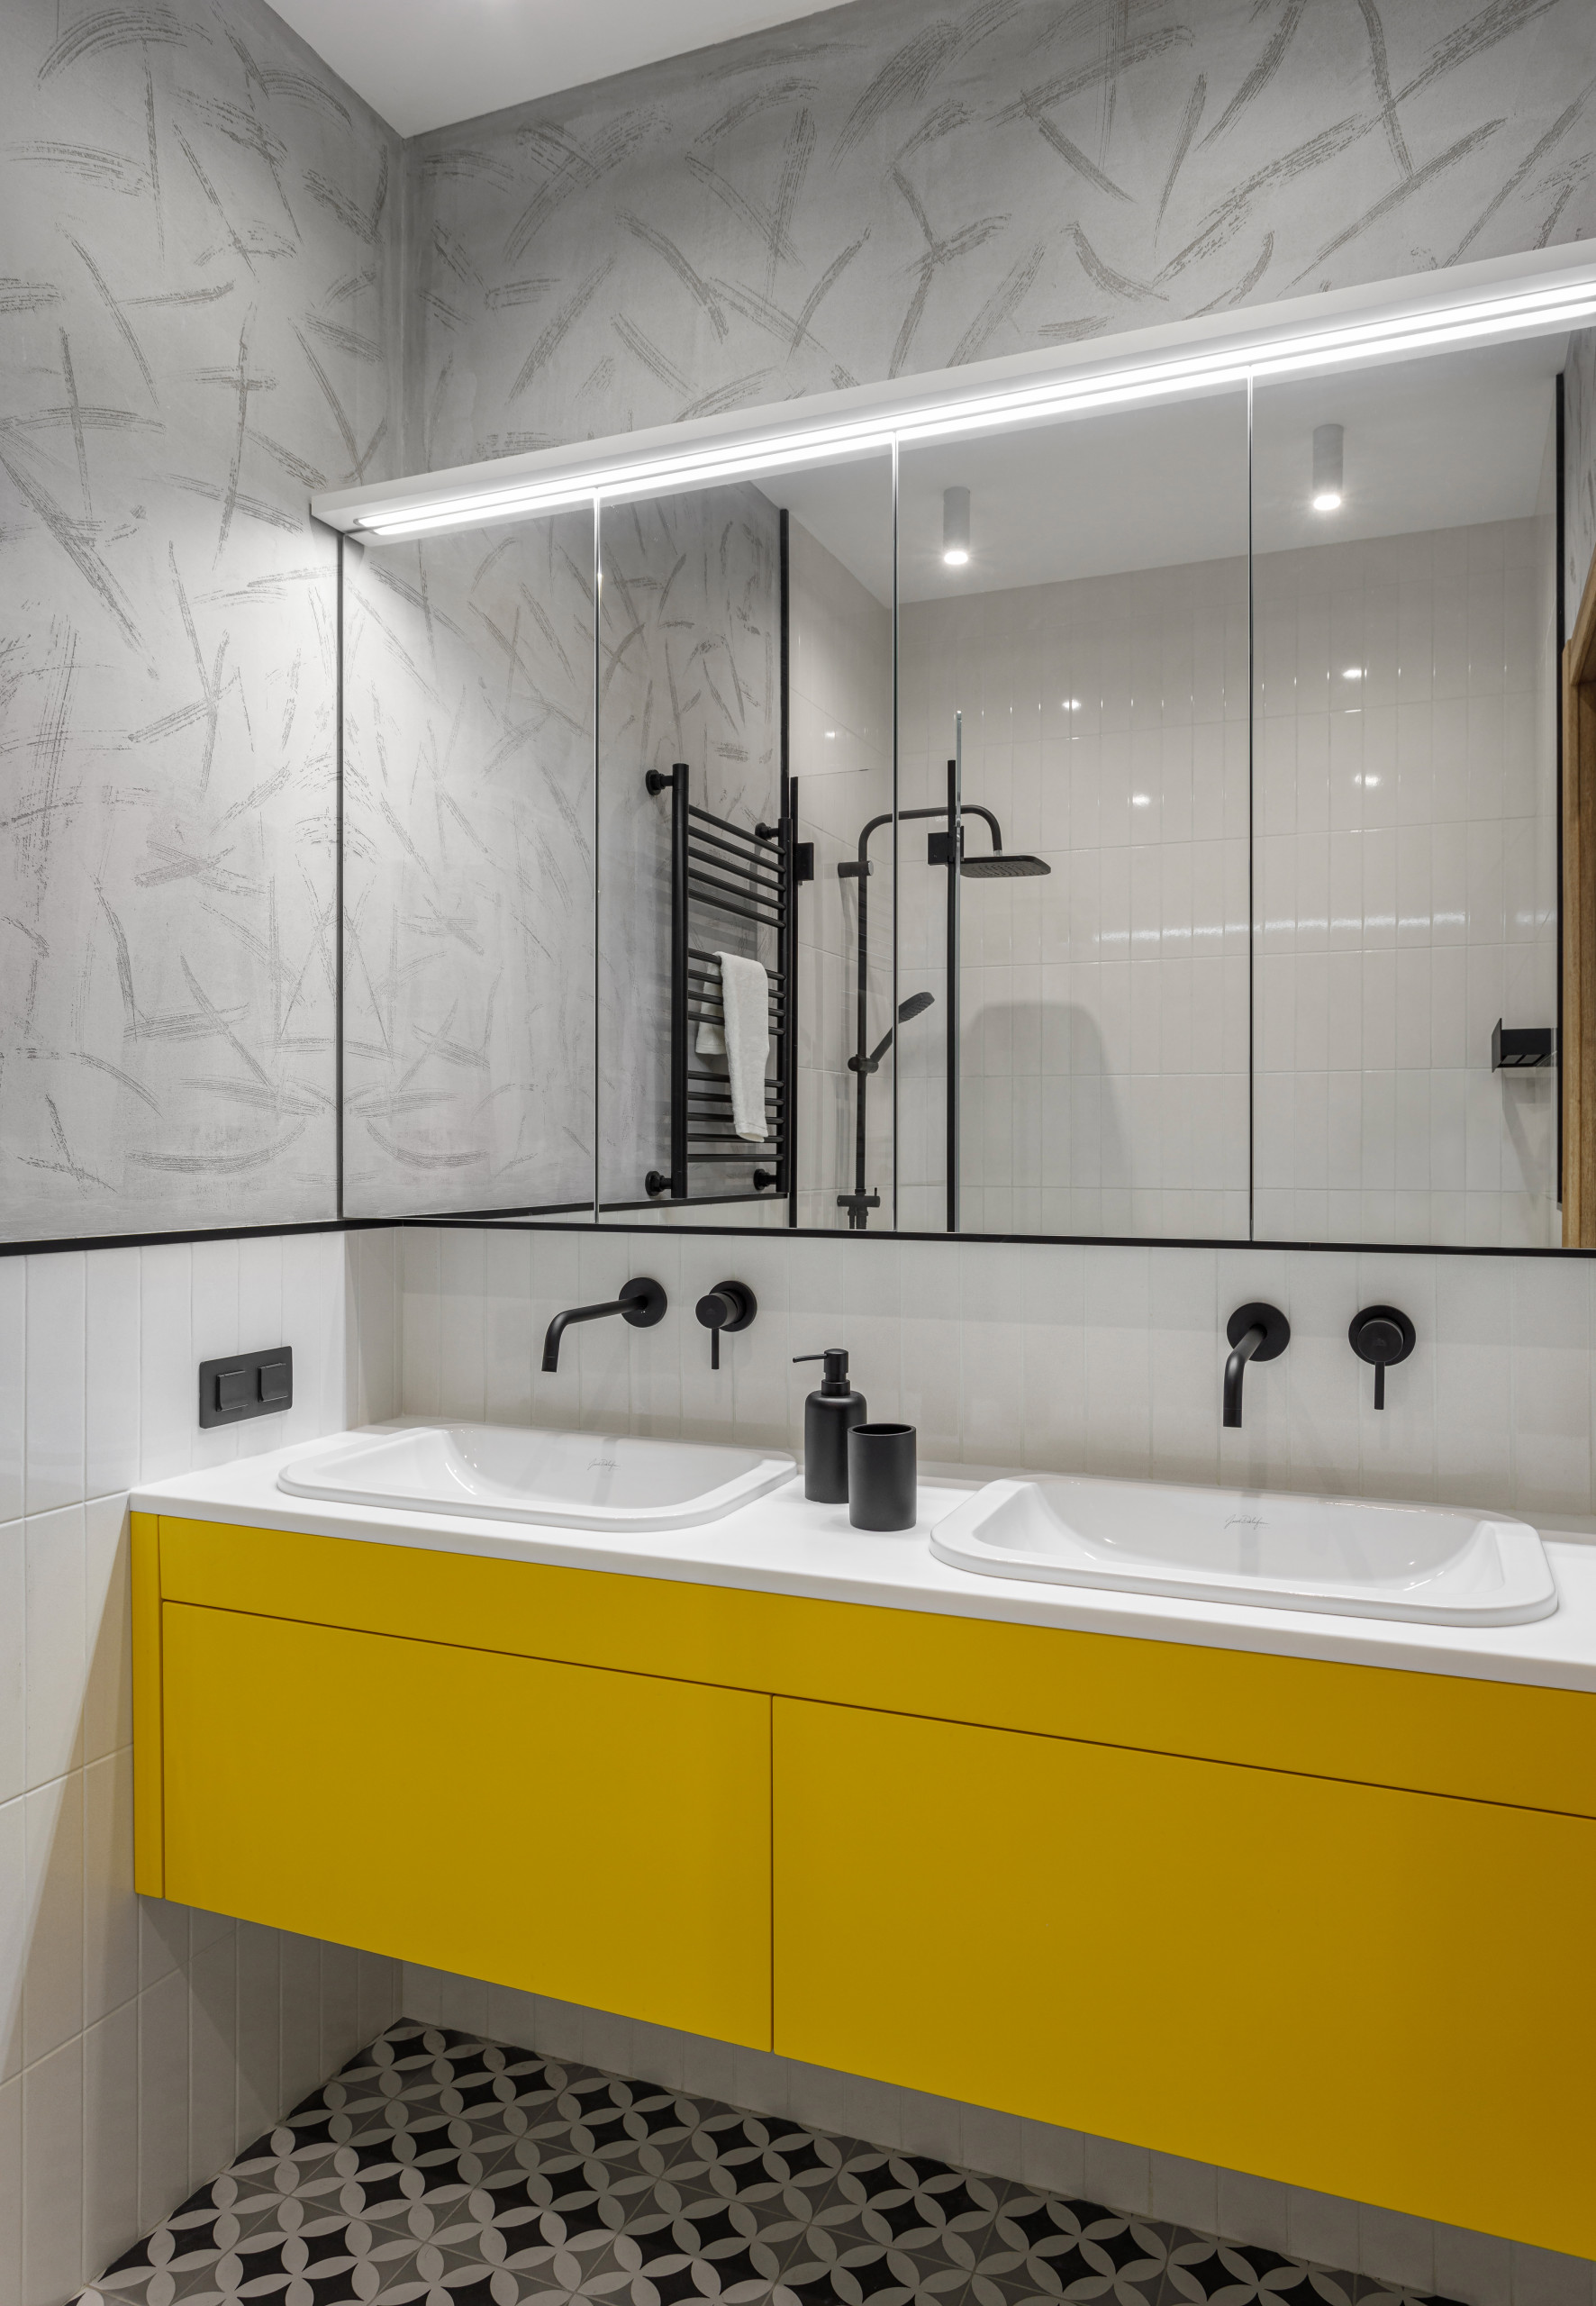 Маленькая ванная: дизайн комнаты, эффектные интерьеры, фото.